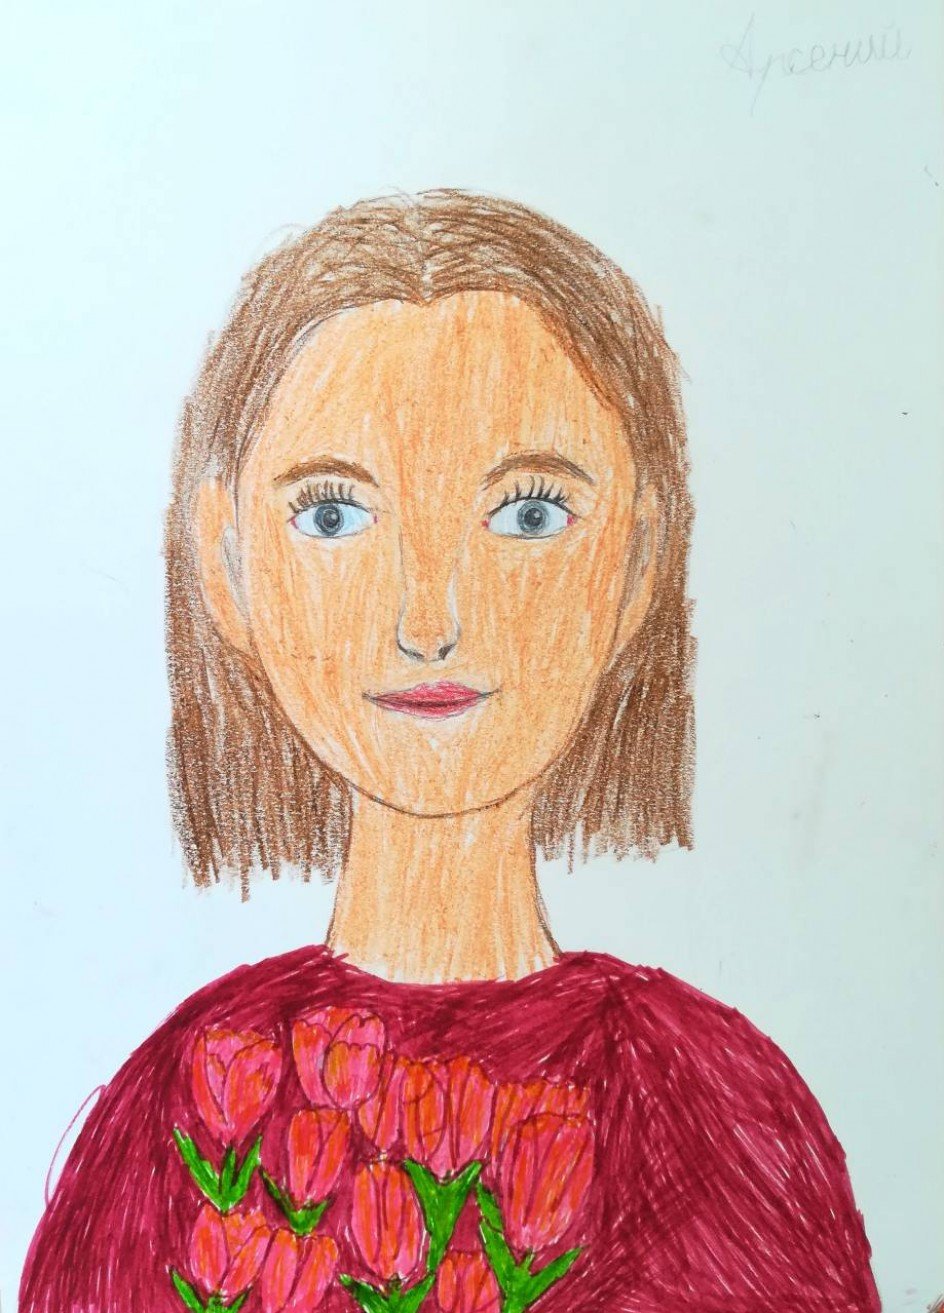 Как нарисовать портрет мамы карандашом от сына 11 лет на день рождения